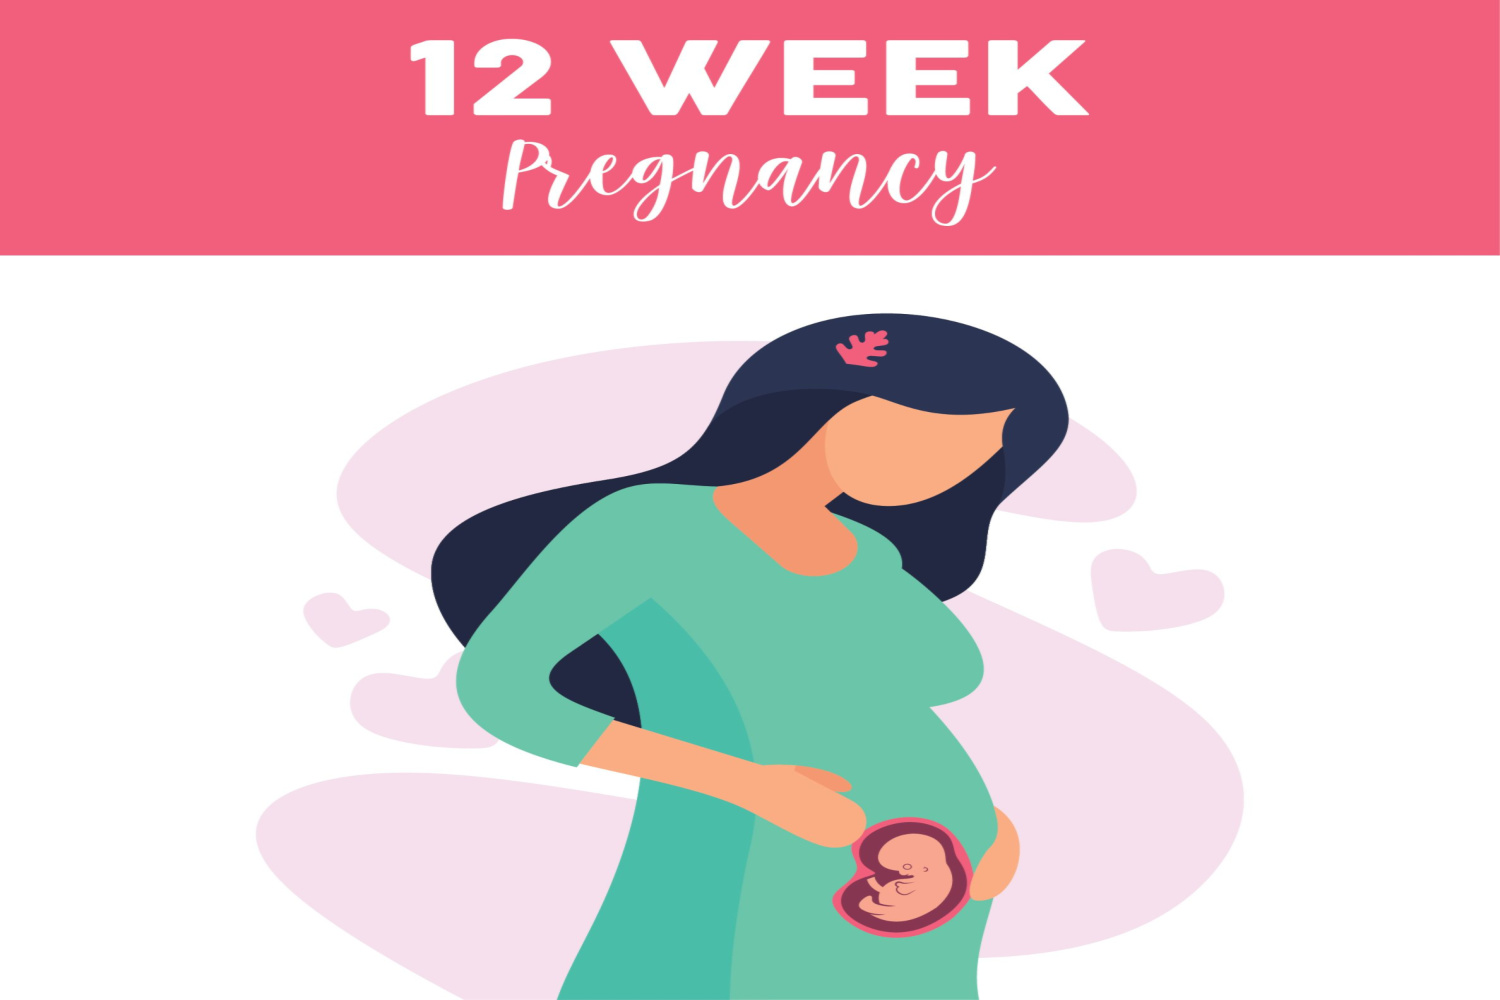 Pregnancy week 12